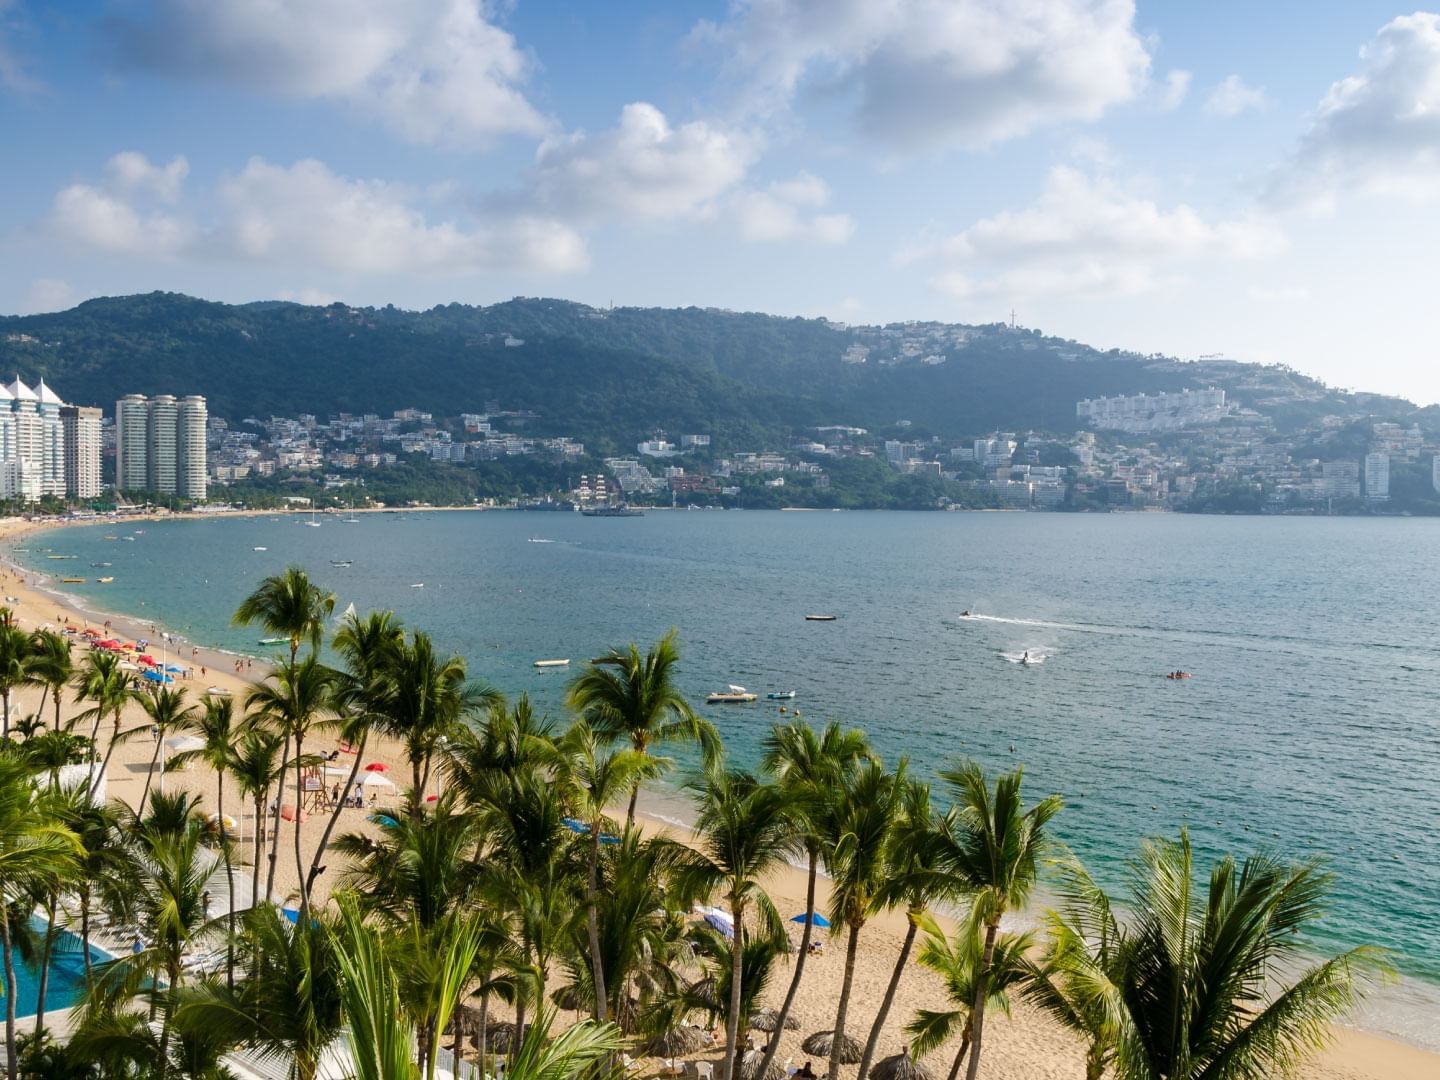 Aerial view of Acapulco with the coastline at La Colección